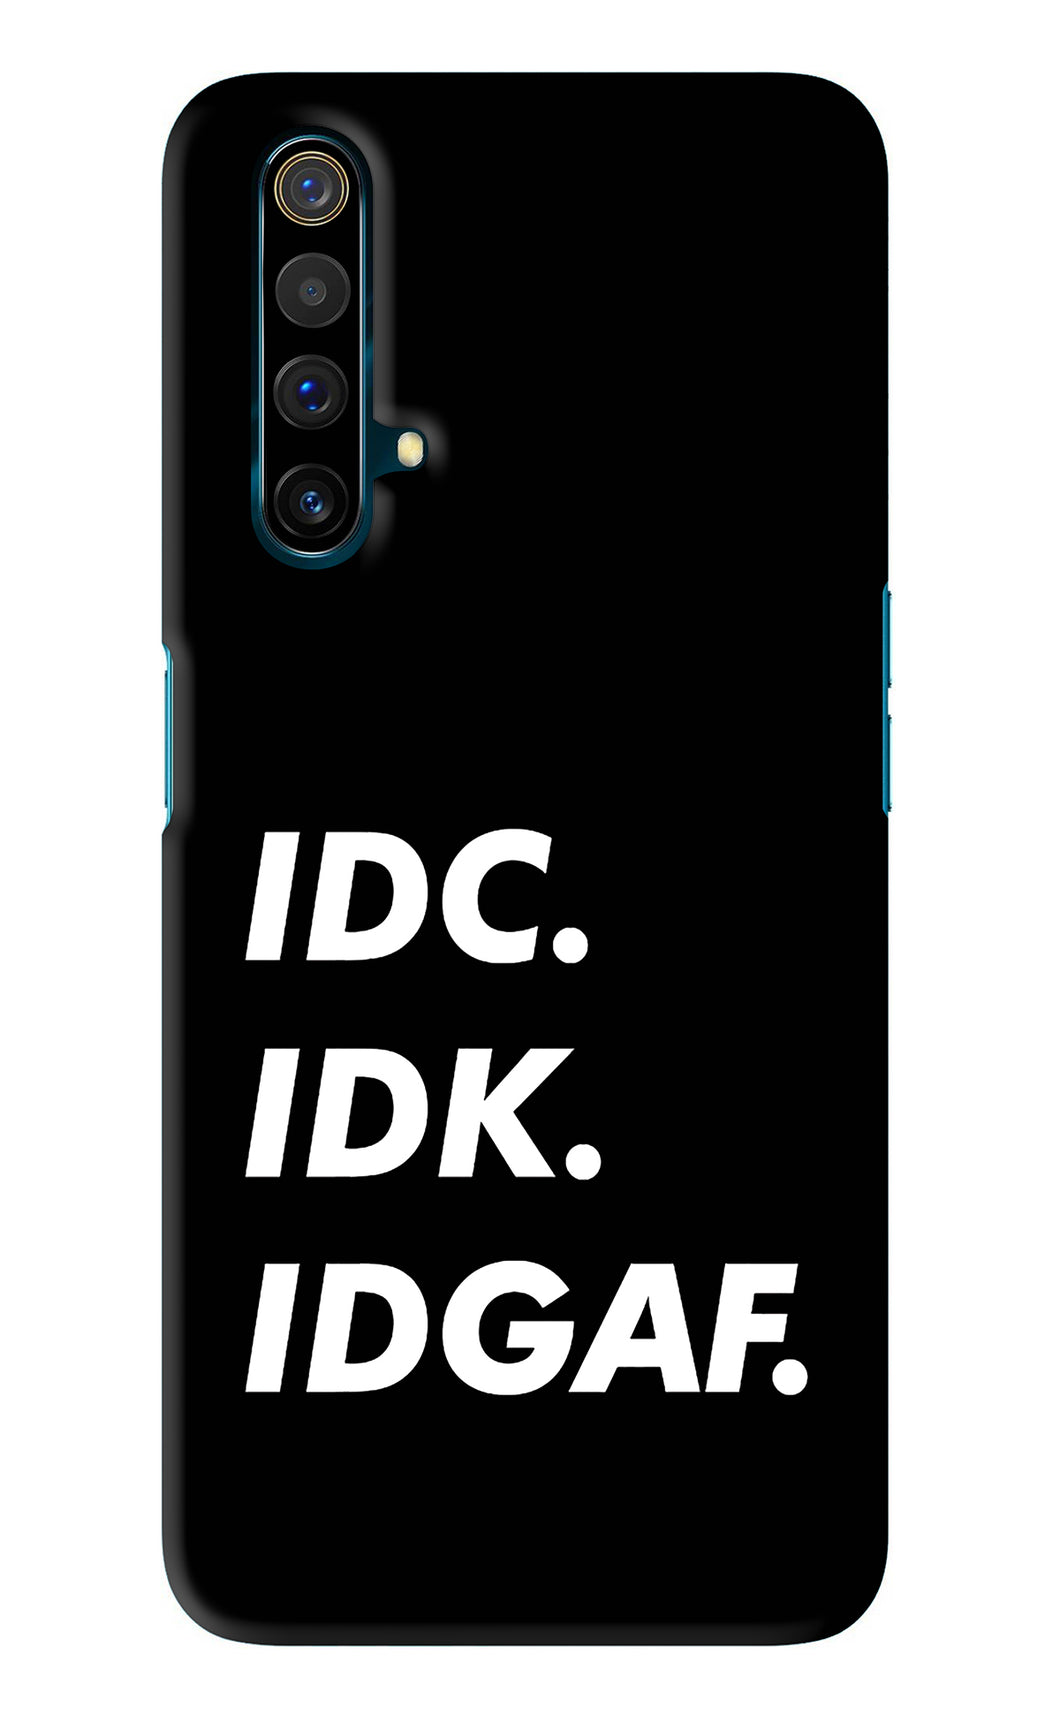 Idc Idk Idgaf Realme X3 Back Skin Wrap